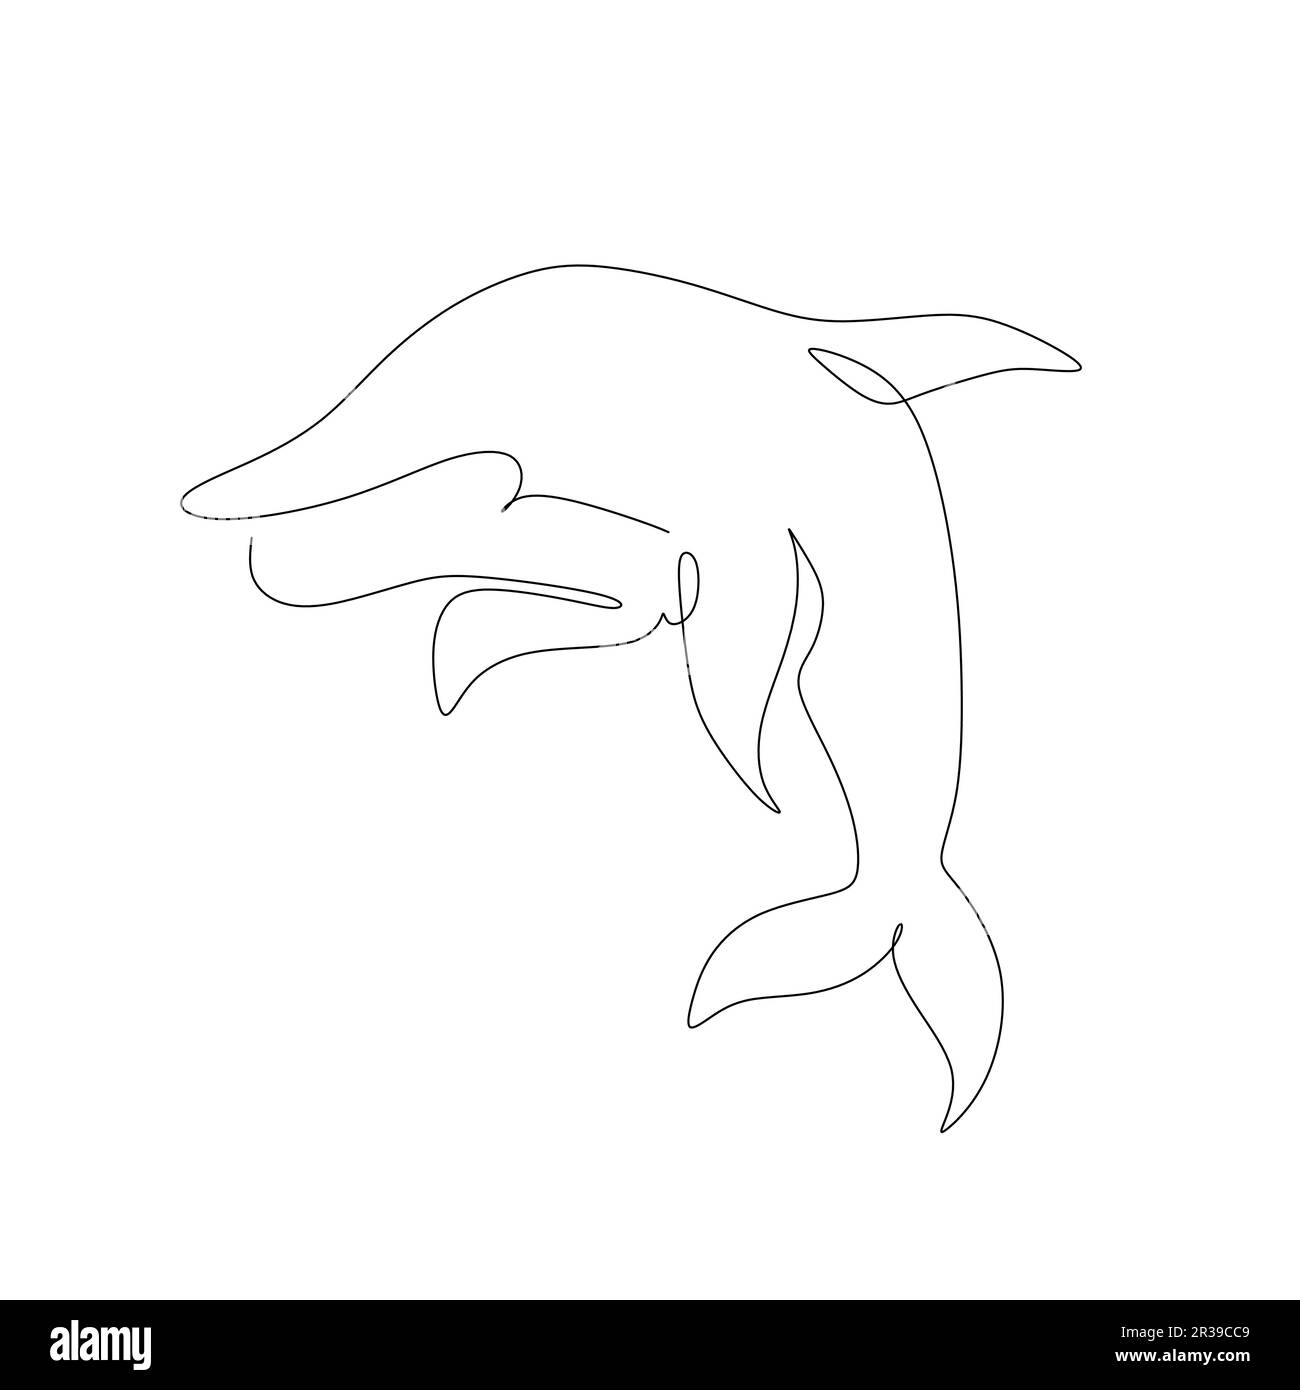 tracé de ligne continu d'un dauphin. Illustration vectorielle sur fond blanc. Illustration de Vecteur